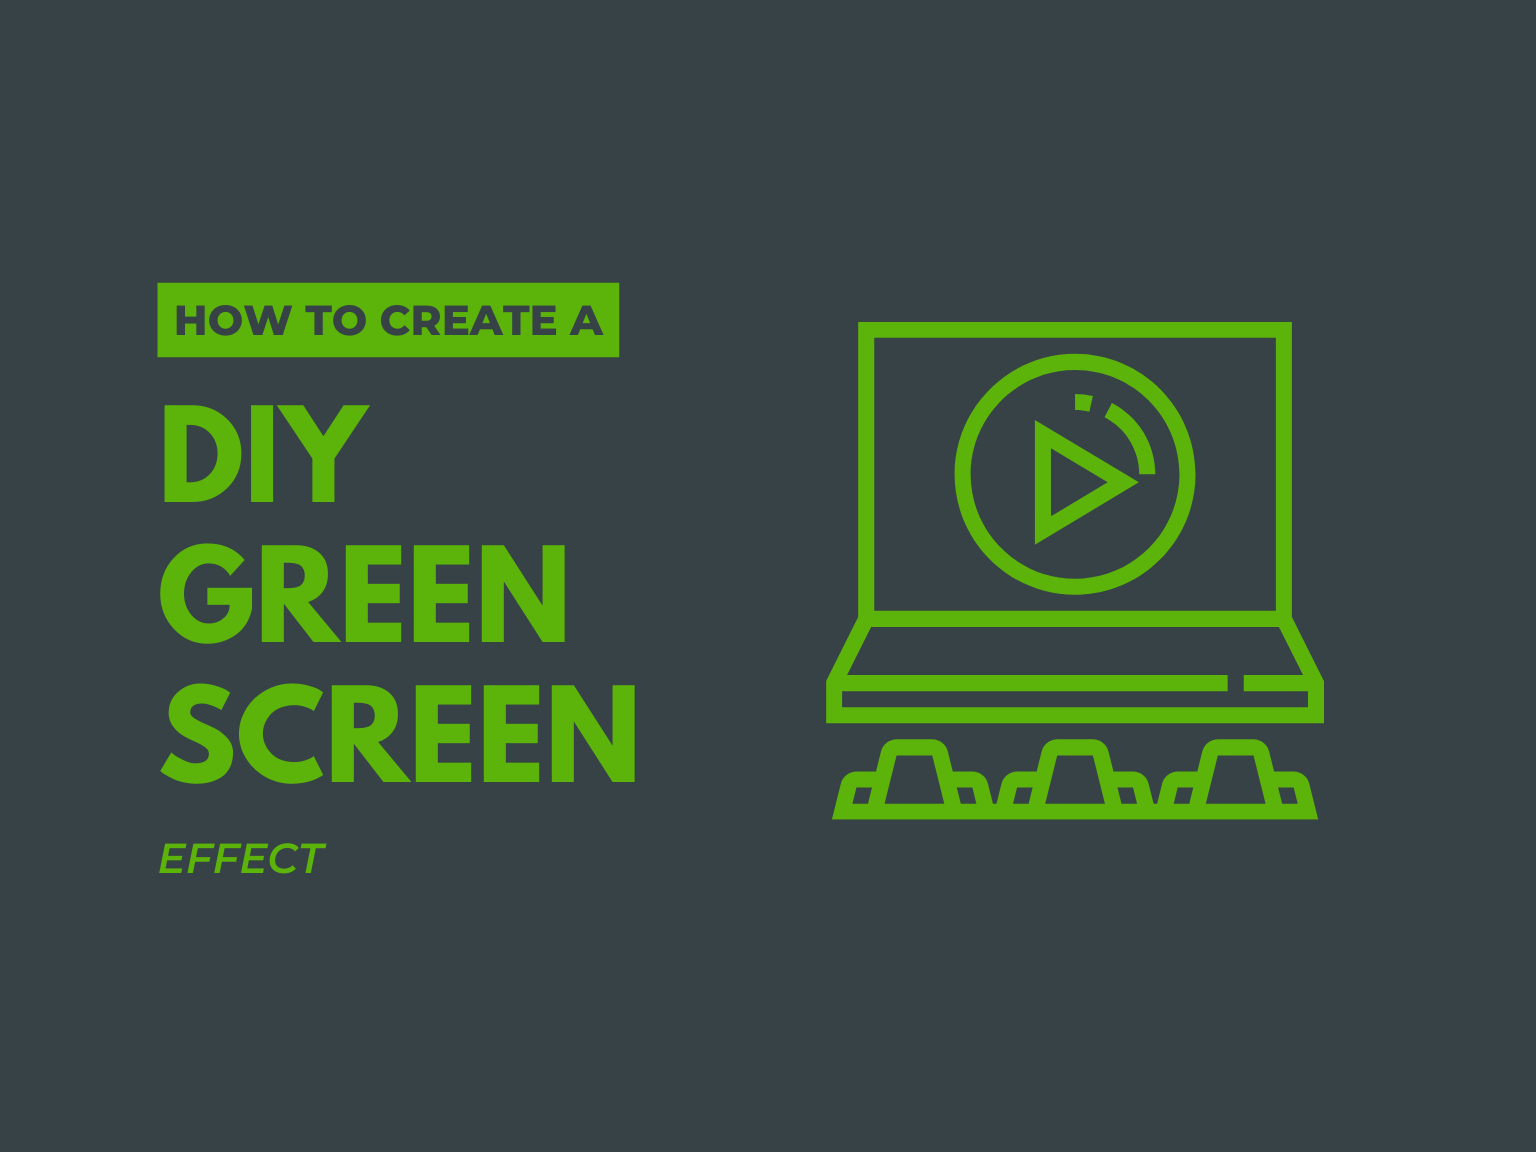 DIY Green Screen: Bạn có muốn tạo thế giới riêng của mình với những cảnh nền tuyệt đẹp cho những video hoặc hình ảnh của mình? Chúng tôi sẽ hướng dẫn bạn cách tự làm màn xanh tại nhà với chi phí rất ít. Đến với chúng tôi ngay hôm nay để khám phá bí mật và tạo ra những sản phẩm đầy sáng tạo!